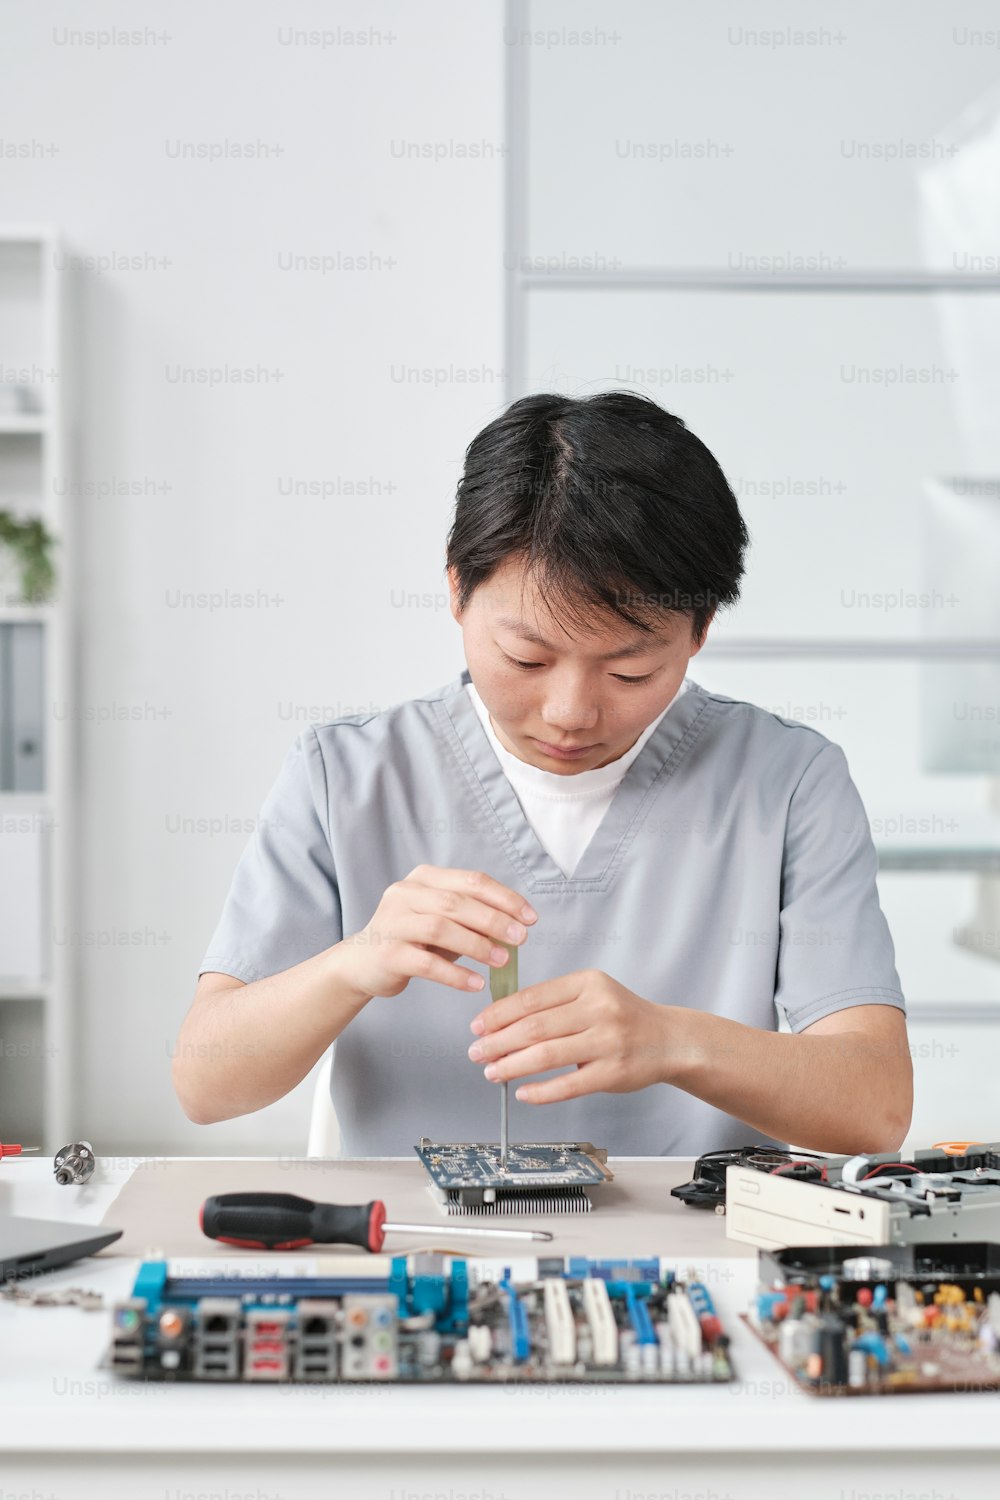 마더보드 또는 기타 하드웨어를 수리하는 유지 보수 서비스의 젊은 중국 여성 노동자